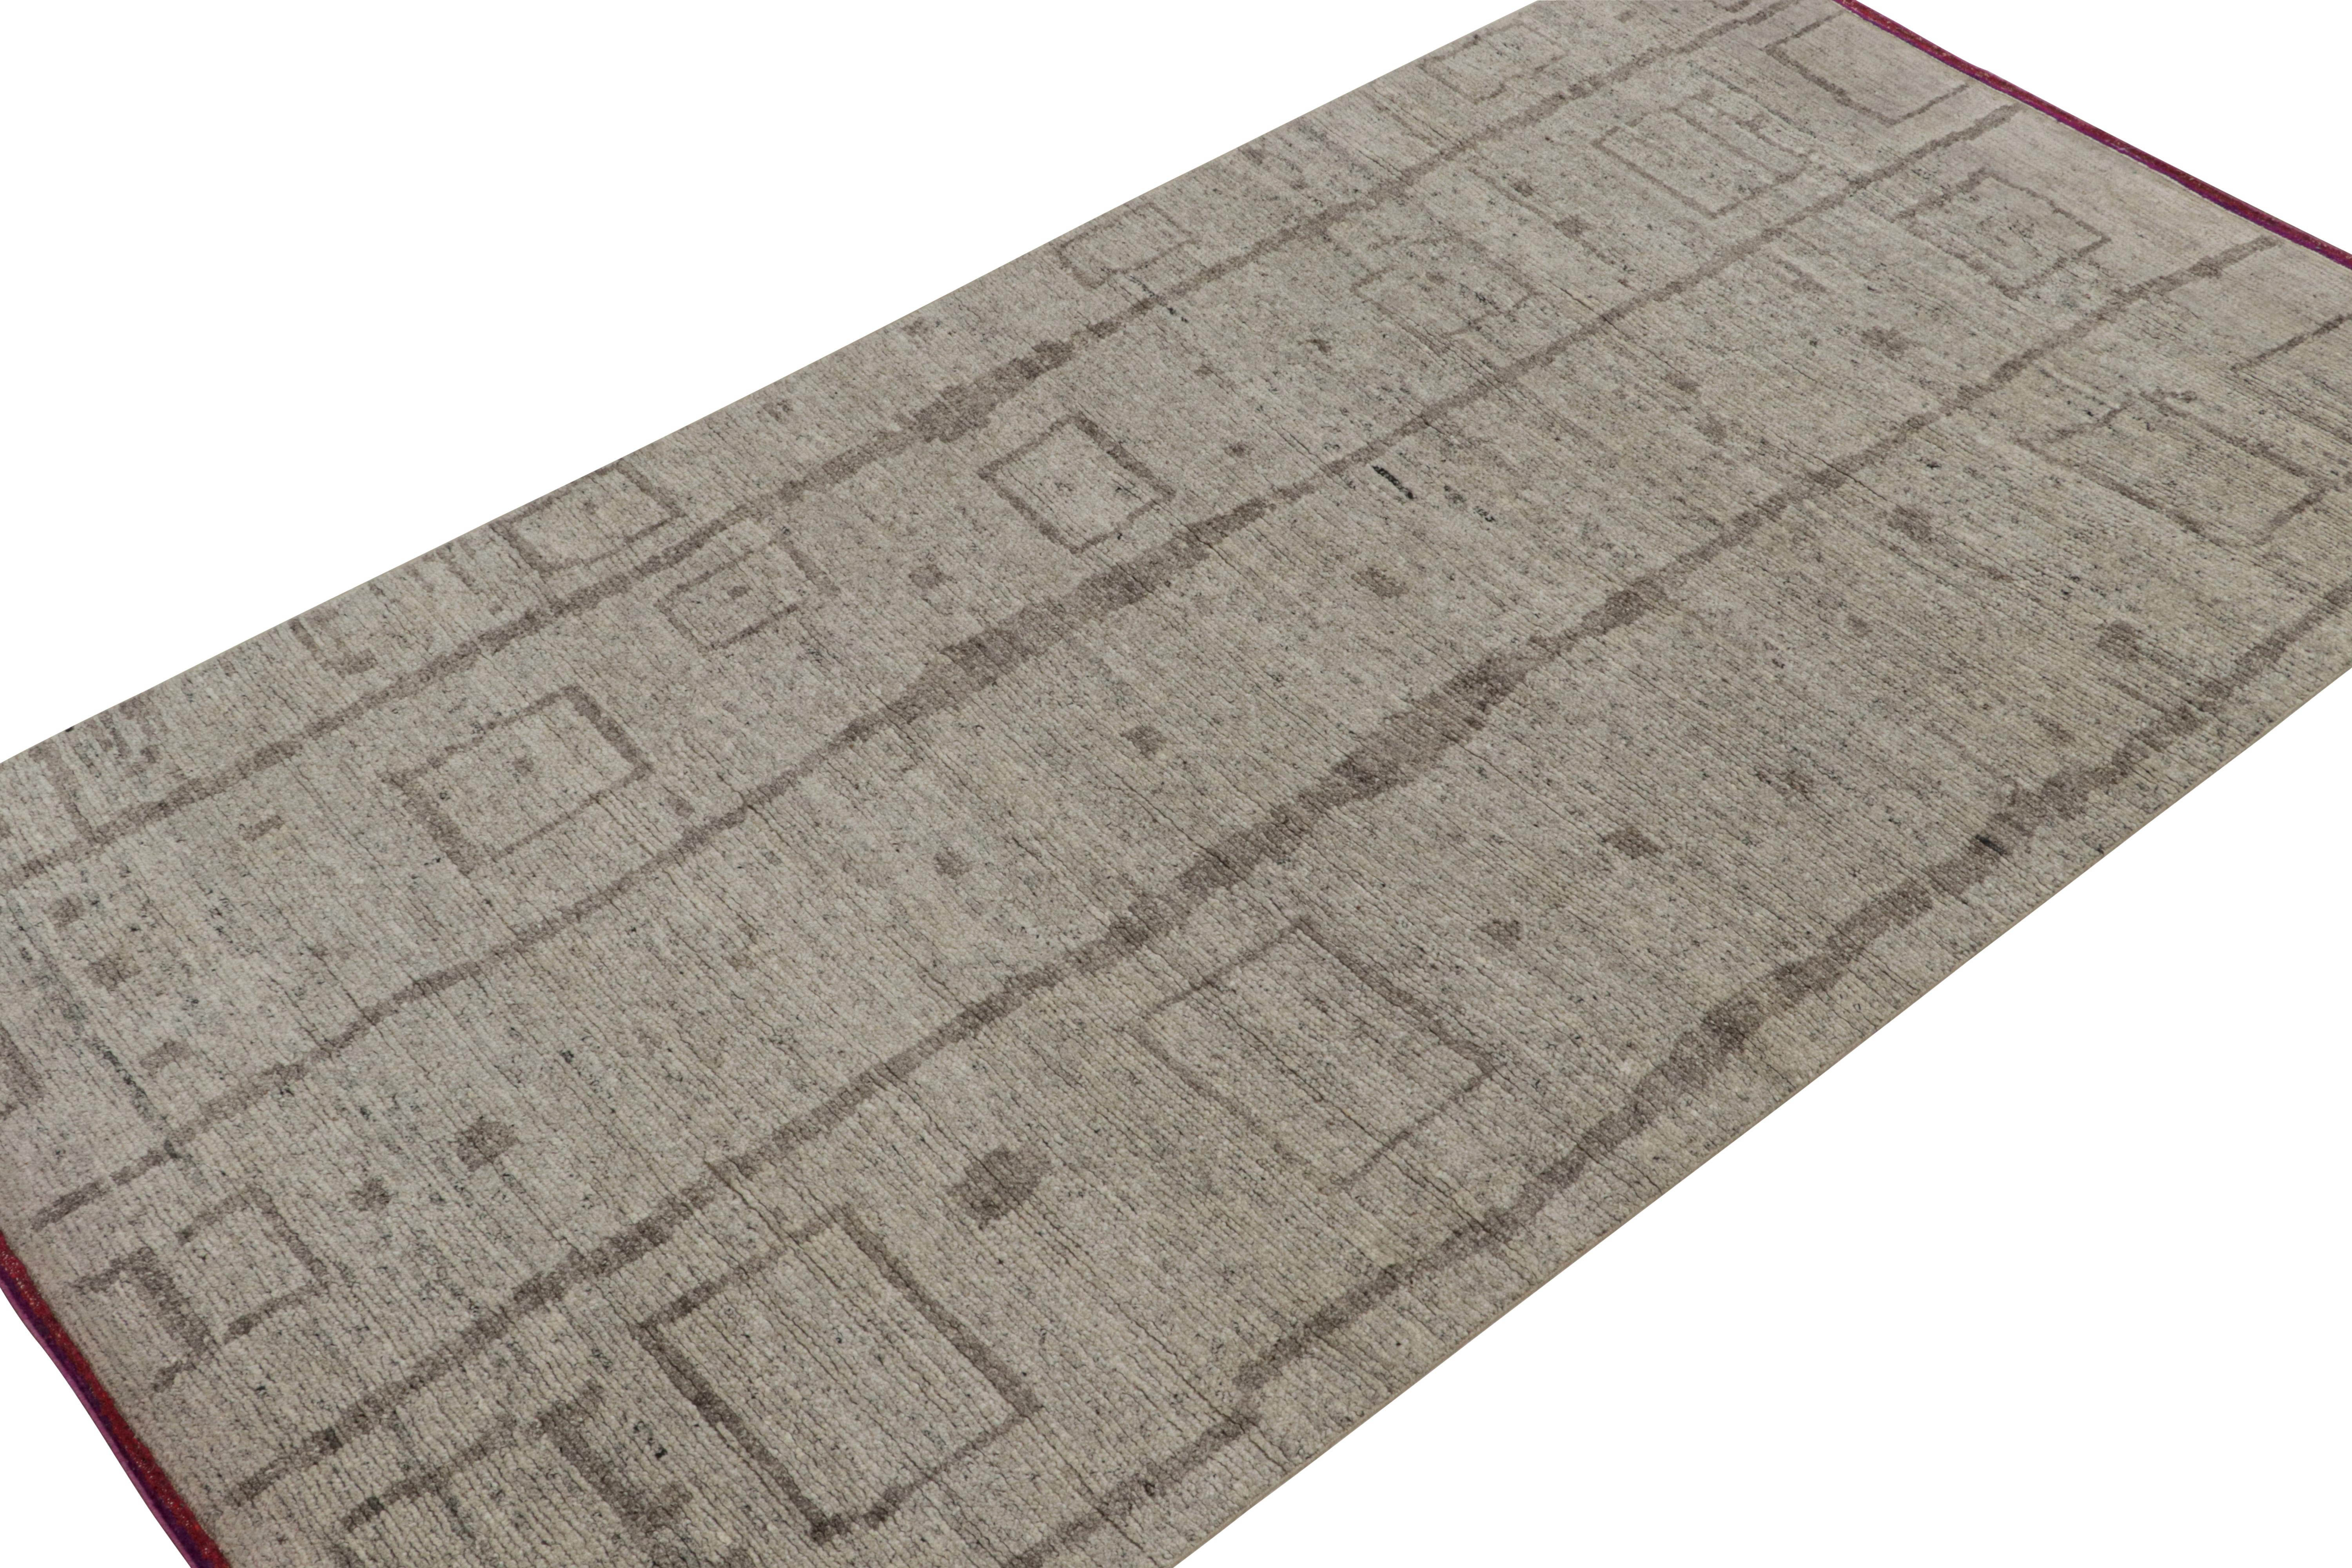 Noué à la main en laine et en coton, ce tapis 6x11 est un nouvel ajout à la Collectional de Rug & Kilim. 

Sur le Design/One

Ce tapis est de style primitiviste avec des motifs dans les tons beige et gris. Les connaisseurs admireront cette